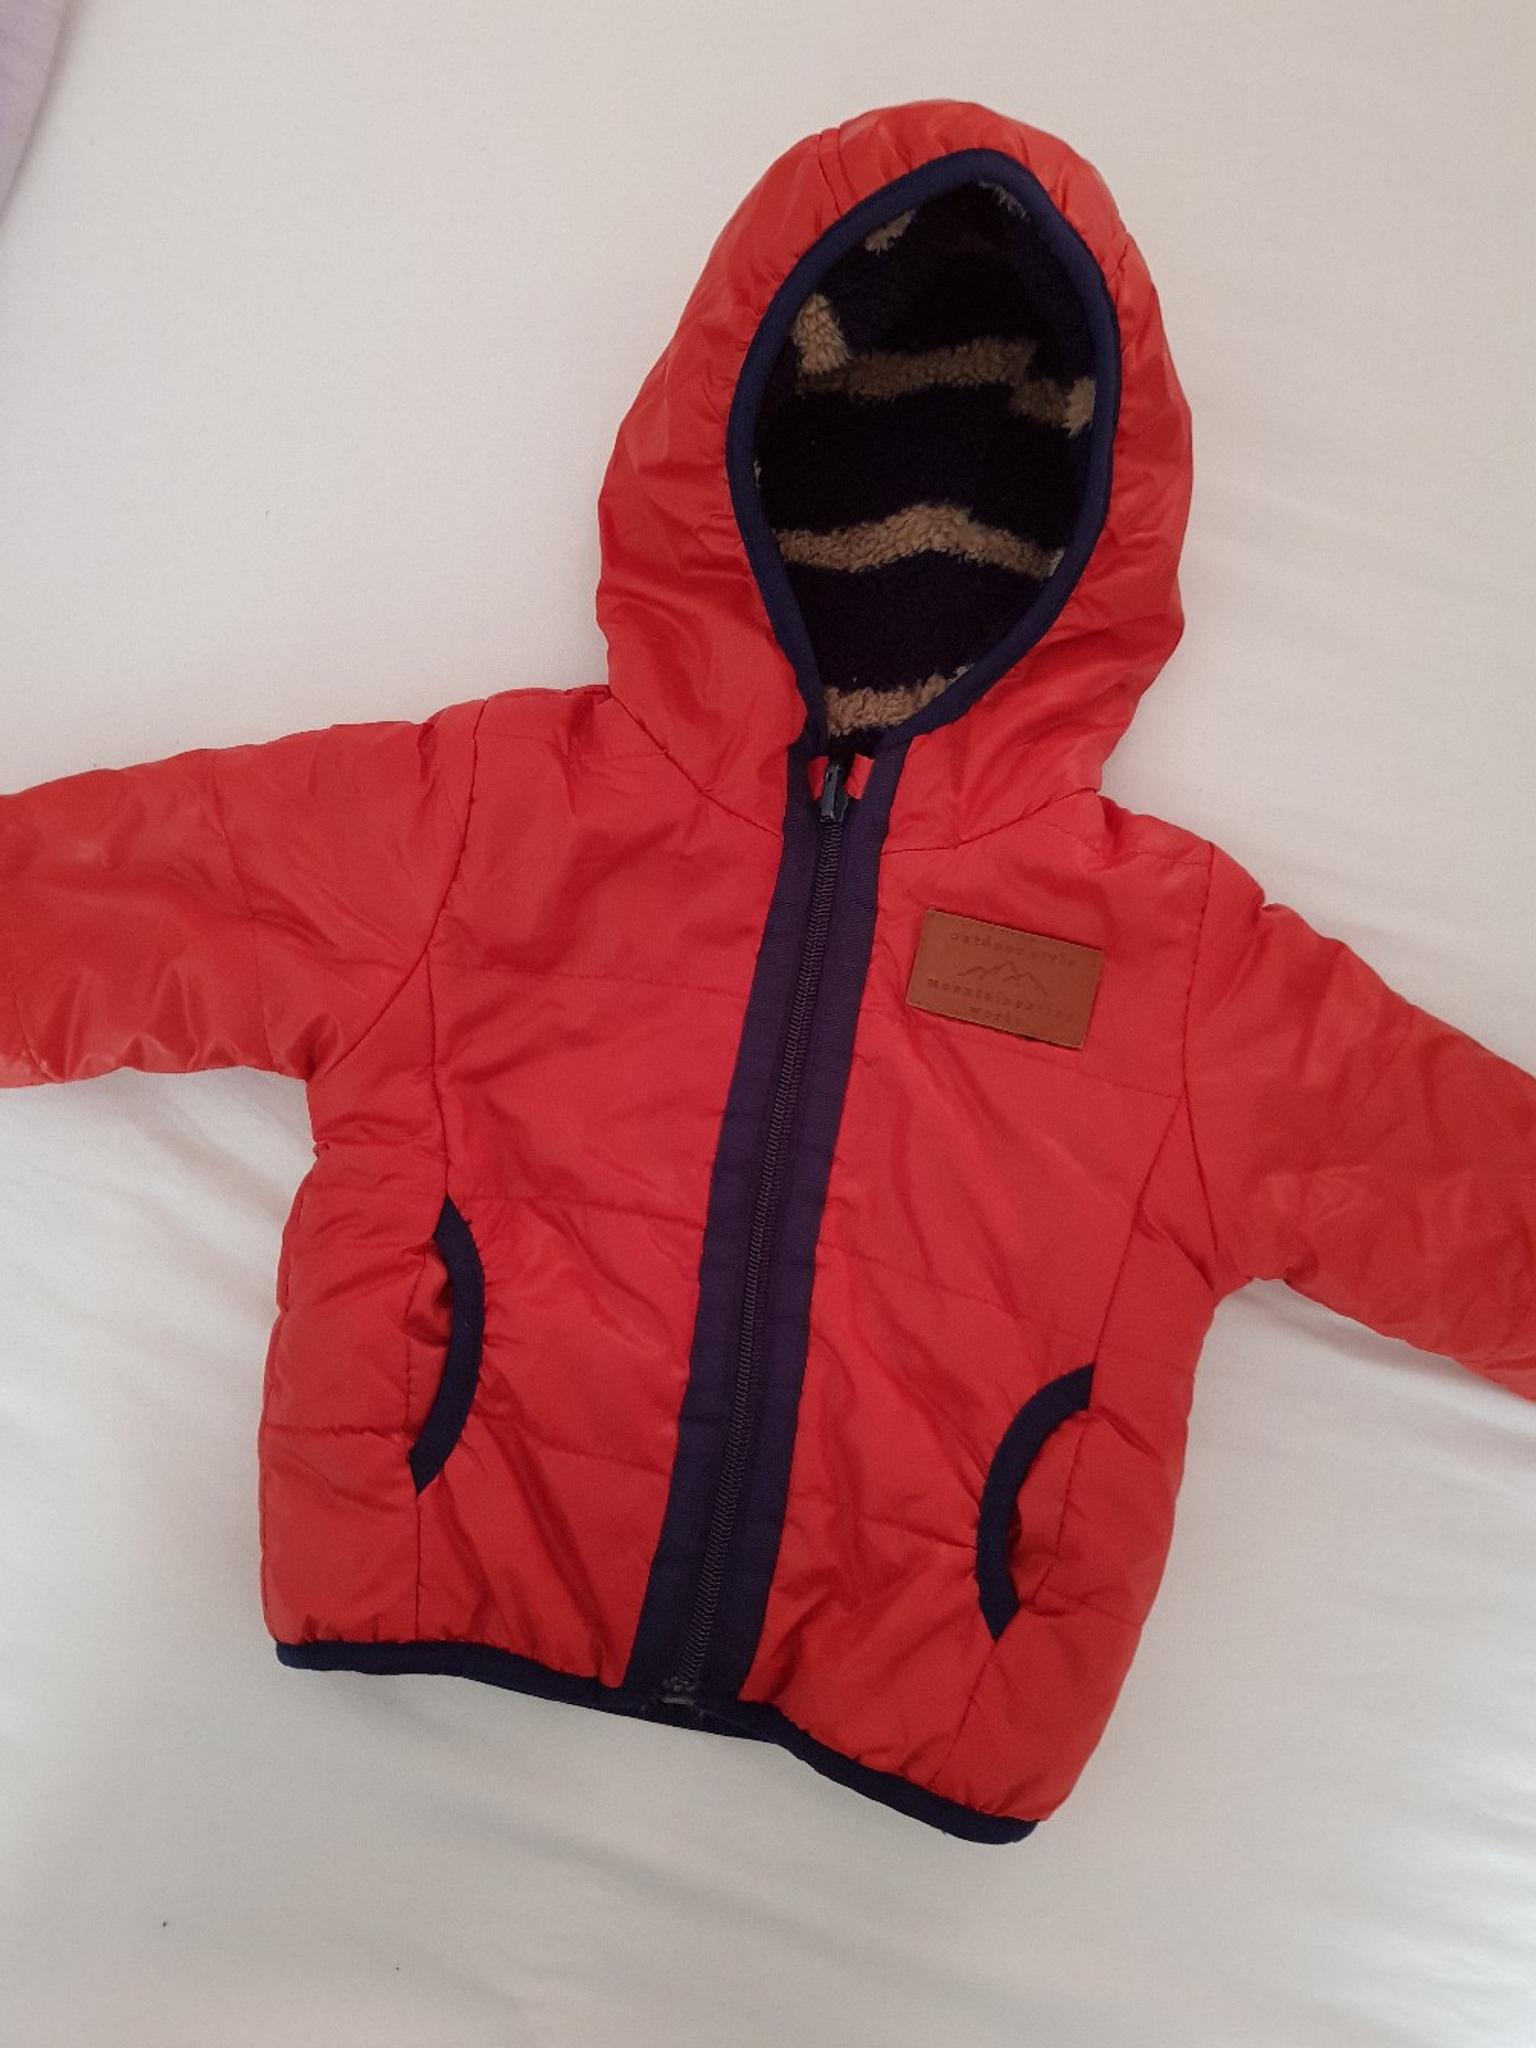 Zara Baby Jungen Winterjacke In Munchen For 9 00 For Sale Shpock